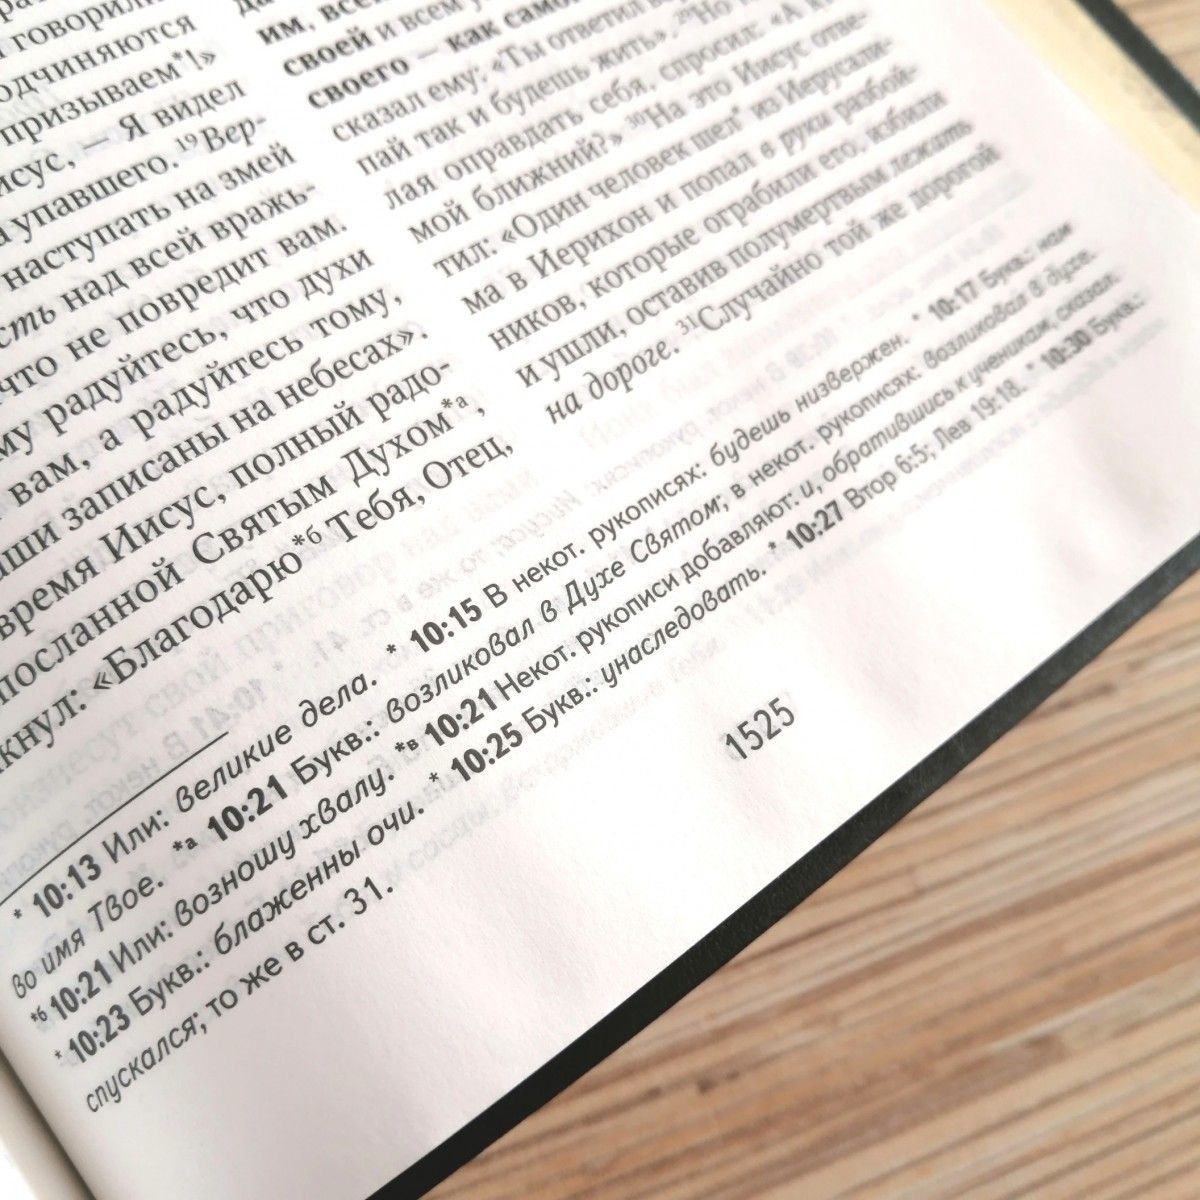 Библия в современном русском переводе 061. под редакцией Кулакова. Переплет из искусственной кожи, серебряные страницы, цвет темно-синний